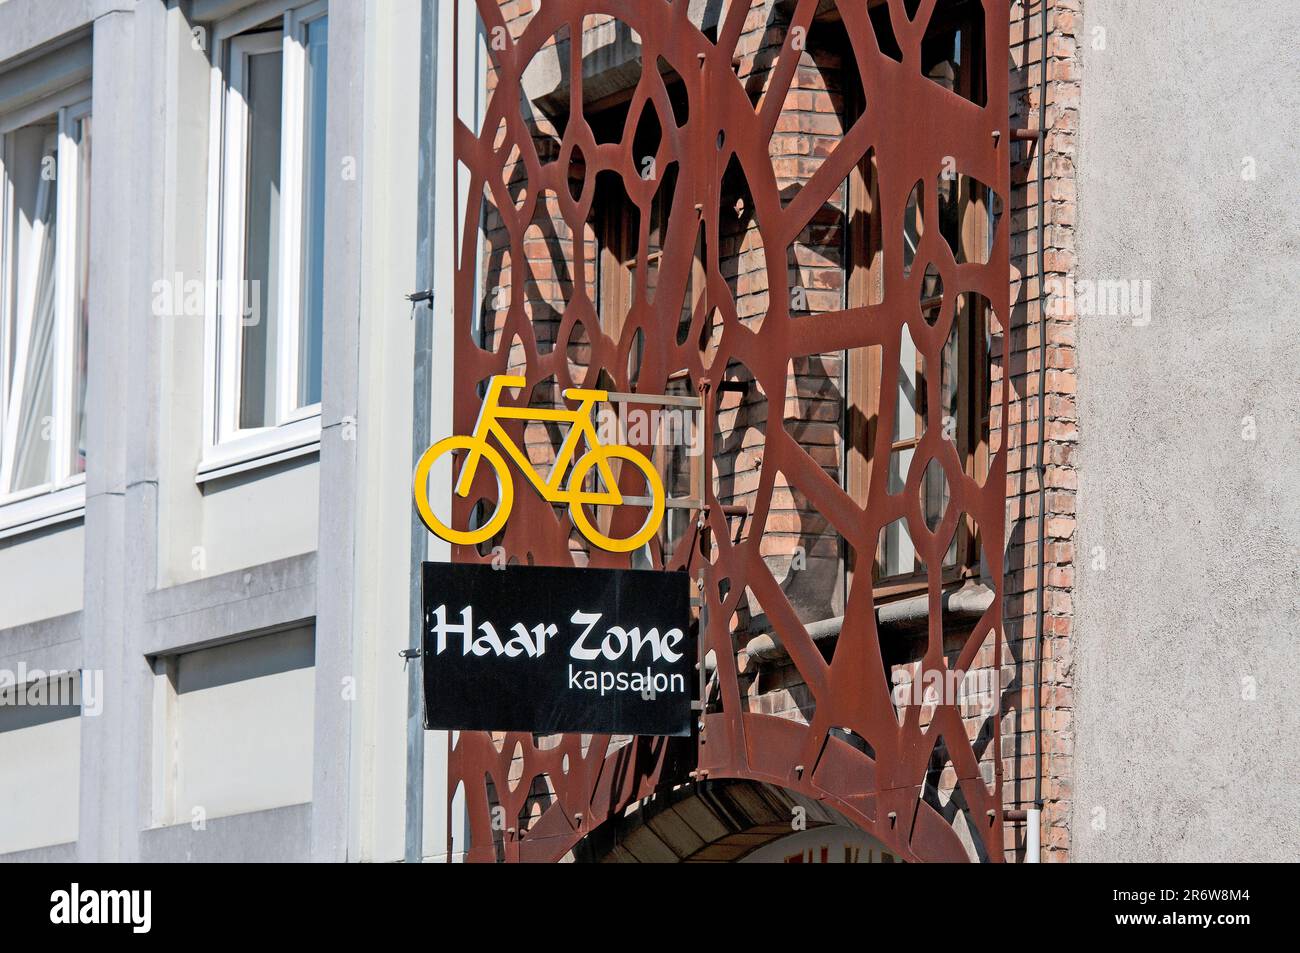 Location de vélos et salon de coiffure Haar zone à Niklaas Desparsstraat, Bruges, Flandre, Belgique Banque D'Images